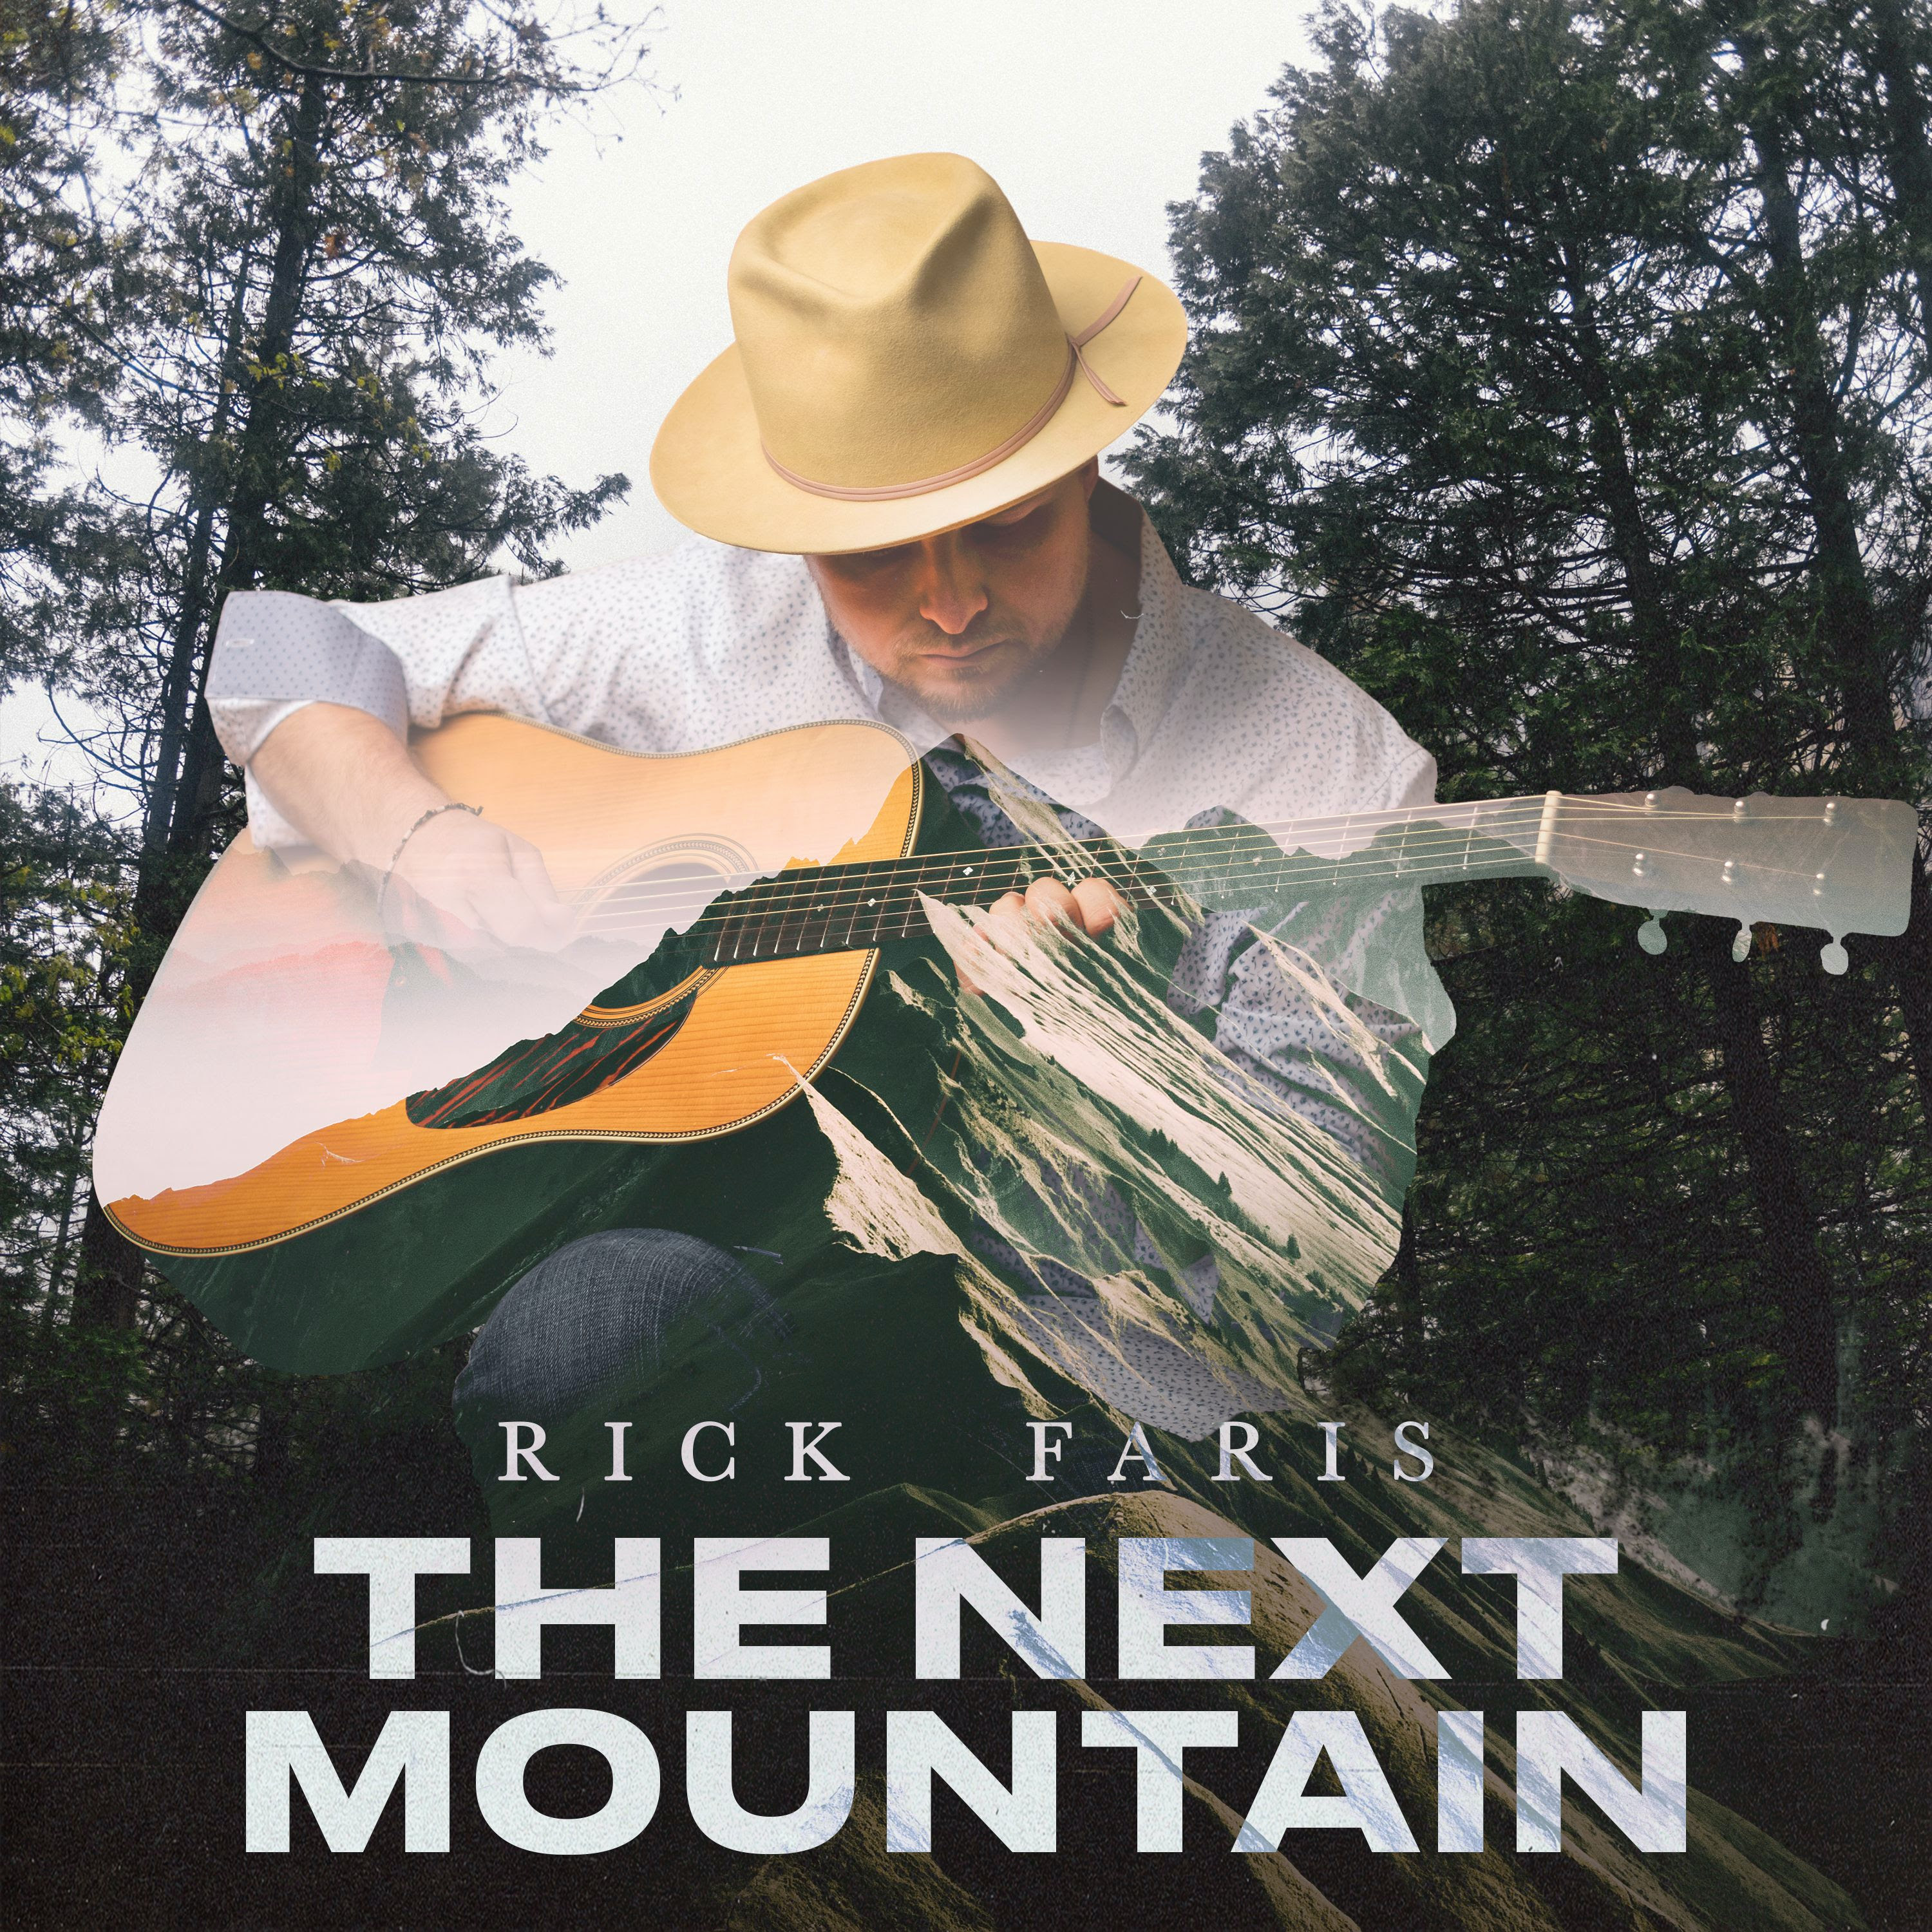 Rick Faris Releases New Album The Next Mountain